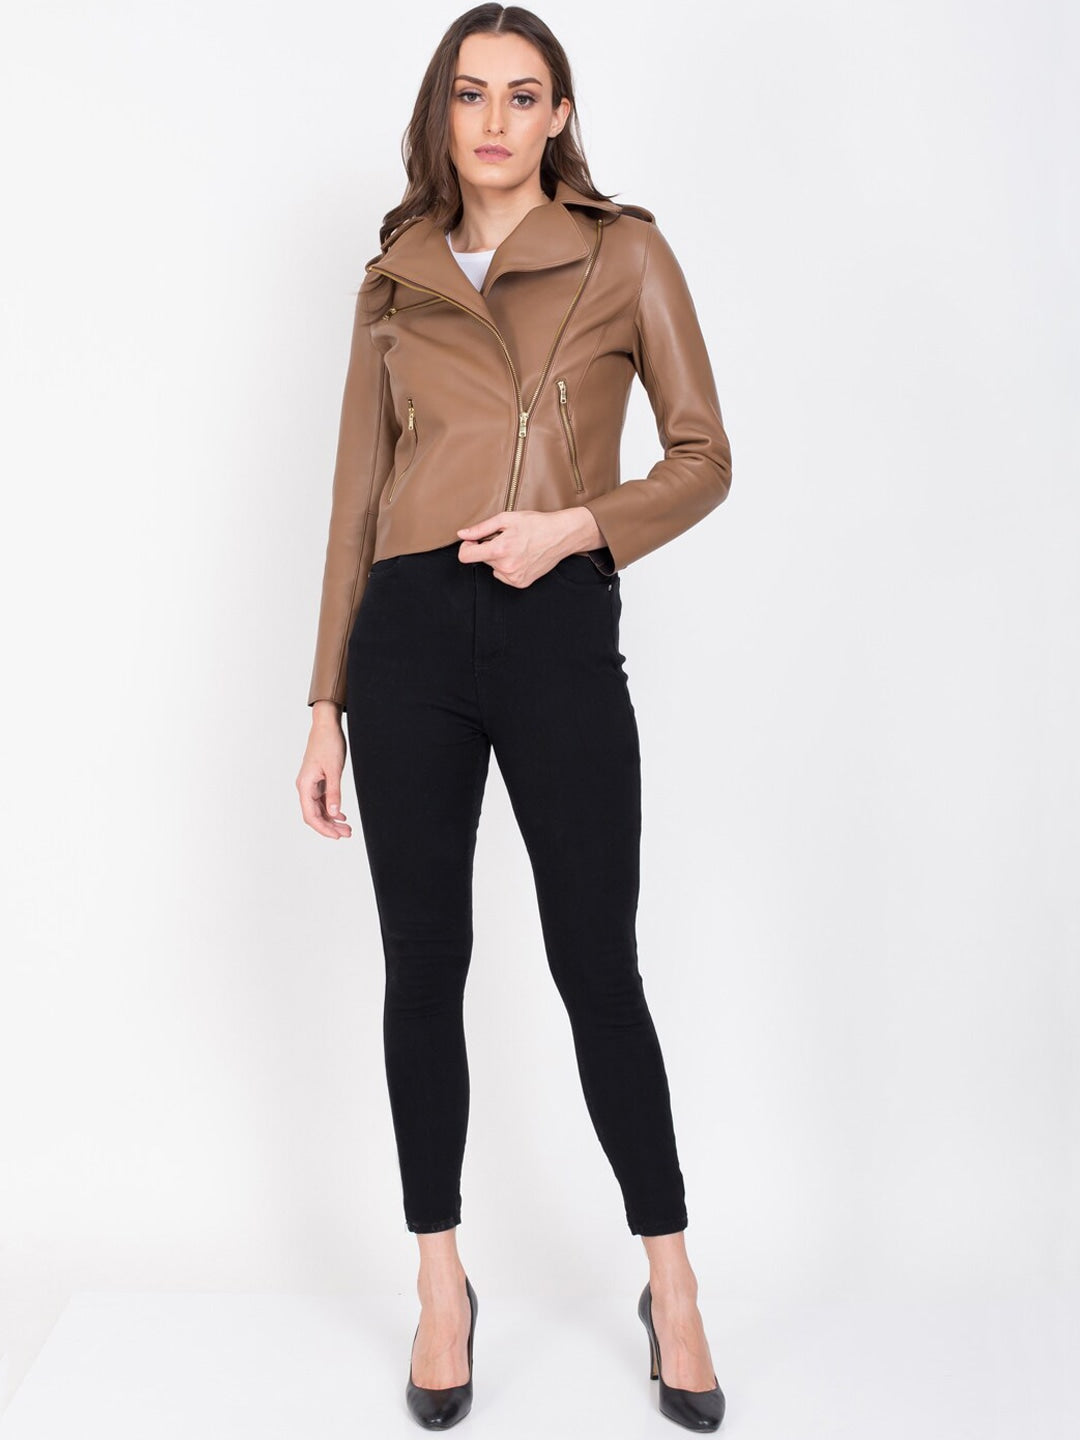 Women Tan Lightweight Crop Outdoor Leather Jacket | QAWACH